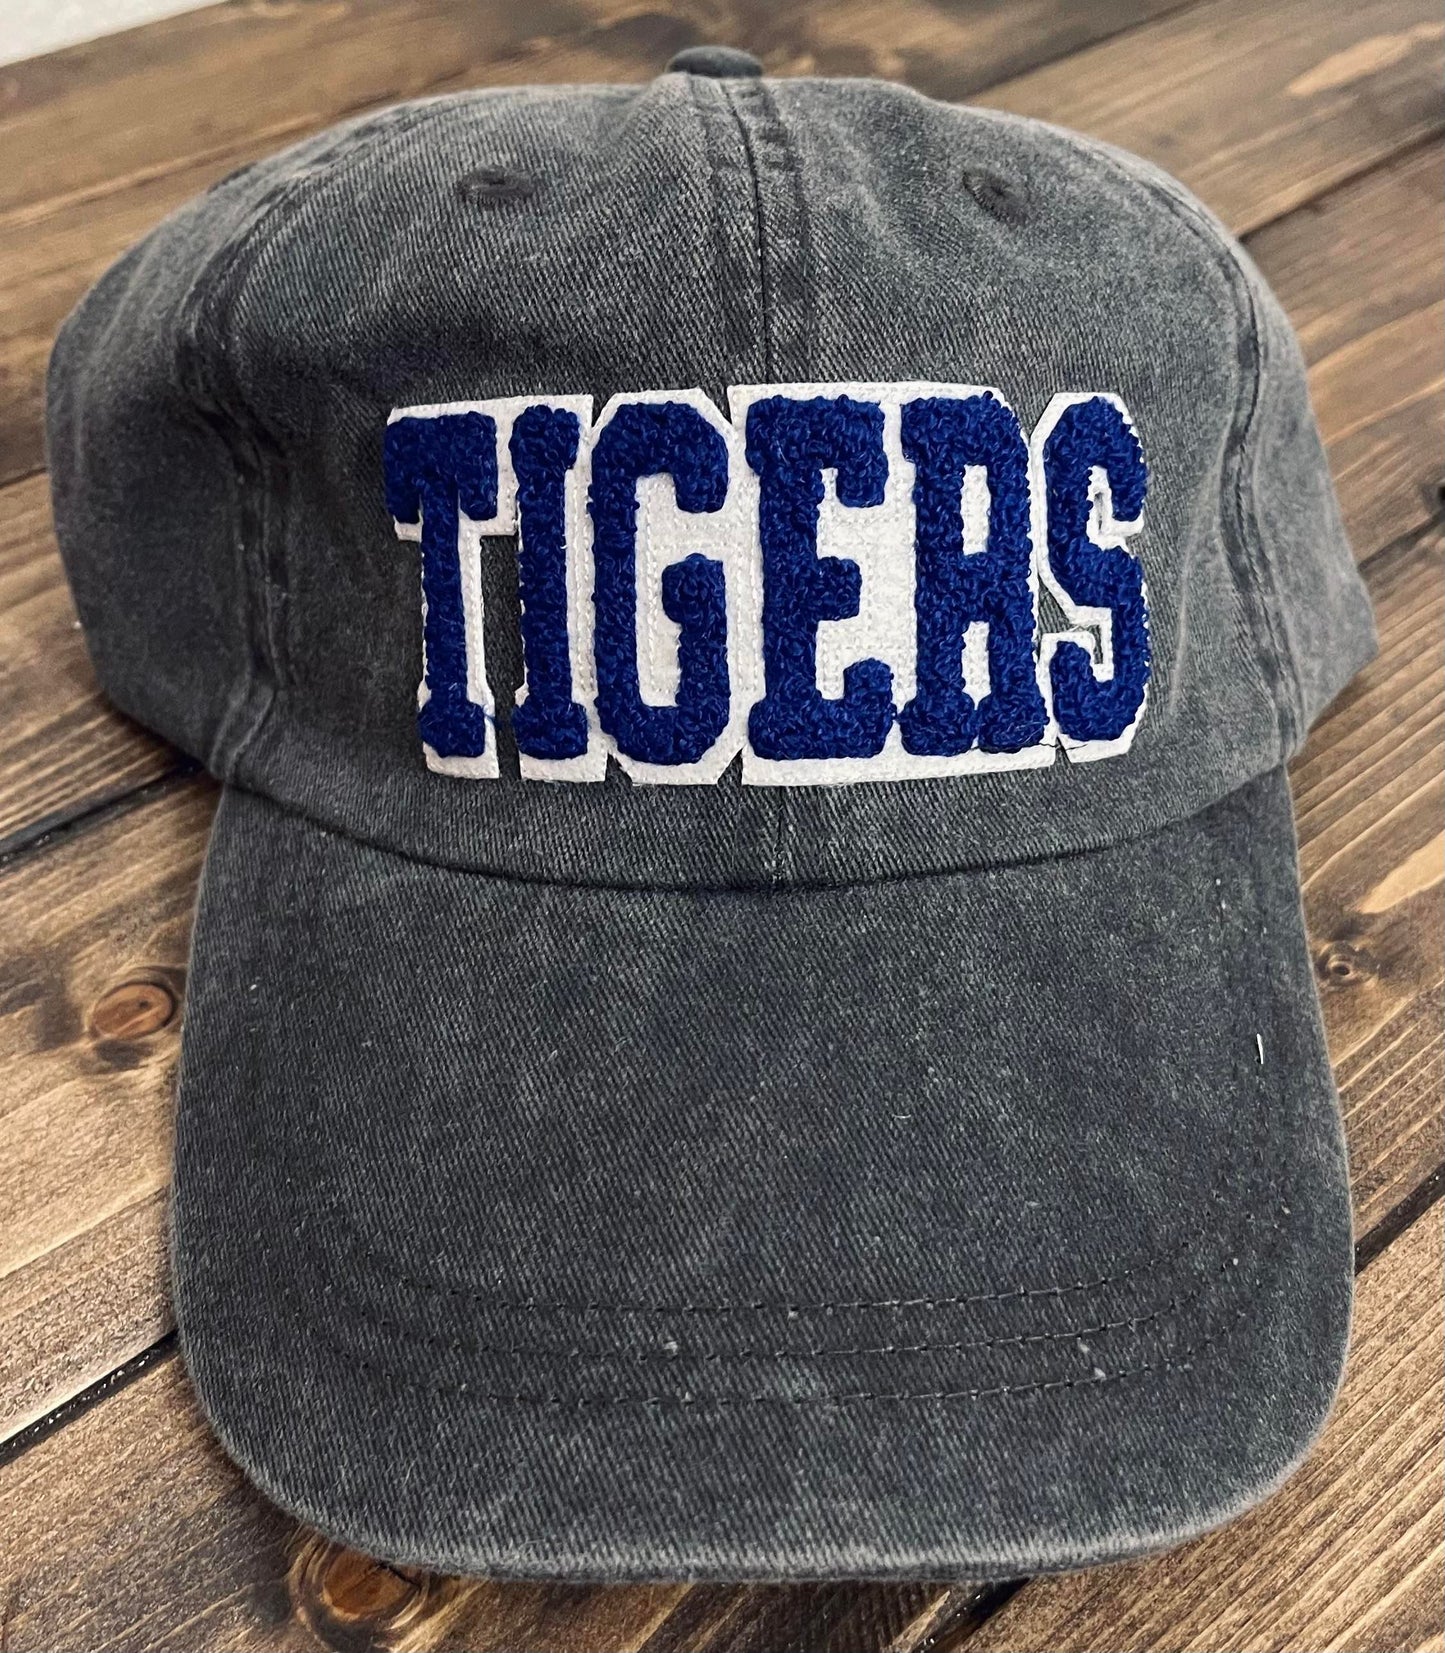 TIGERS - Vintage Chenille Patch Cap